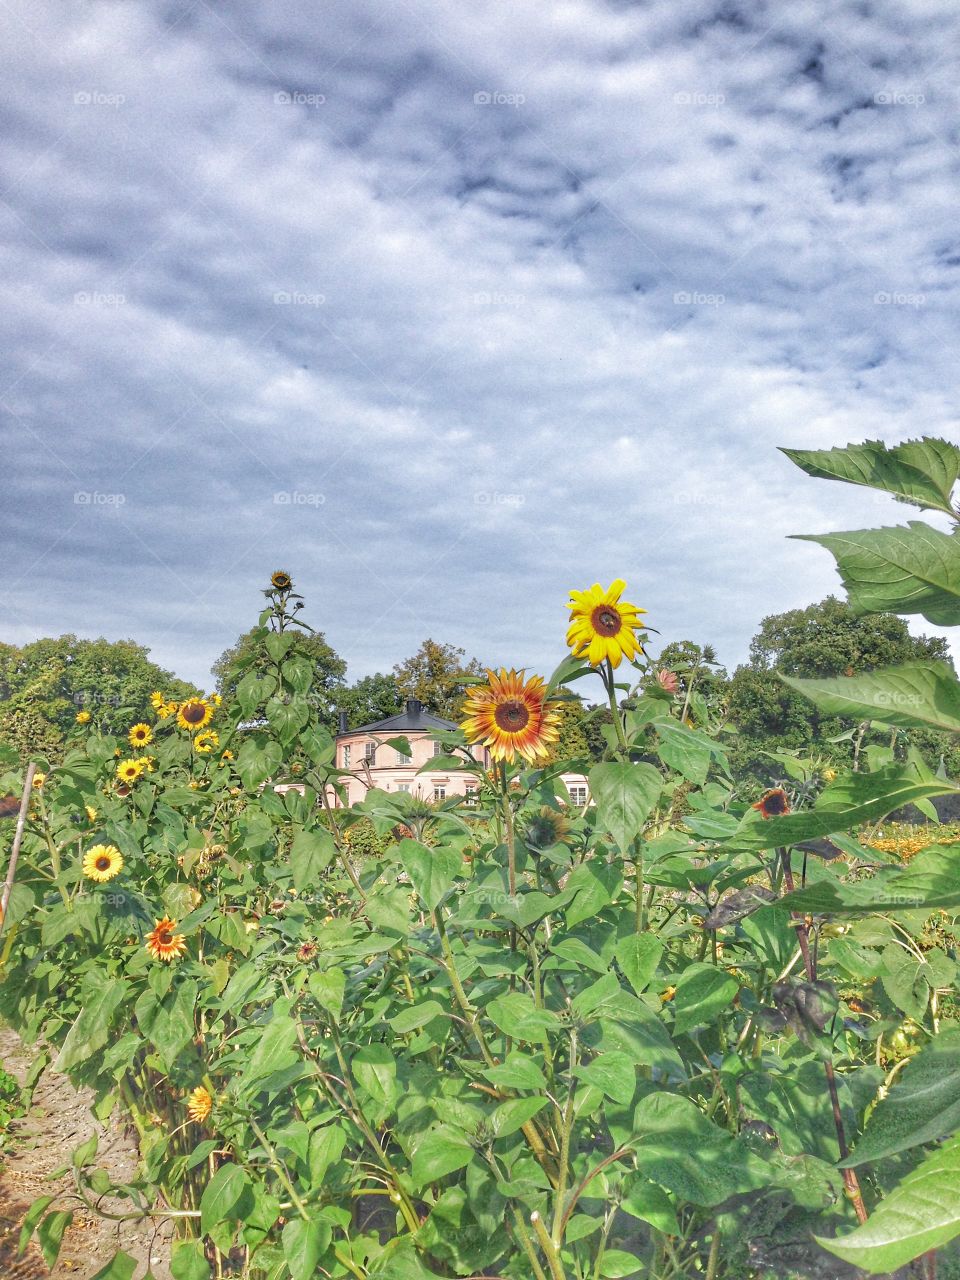 sunflowers at rosendal